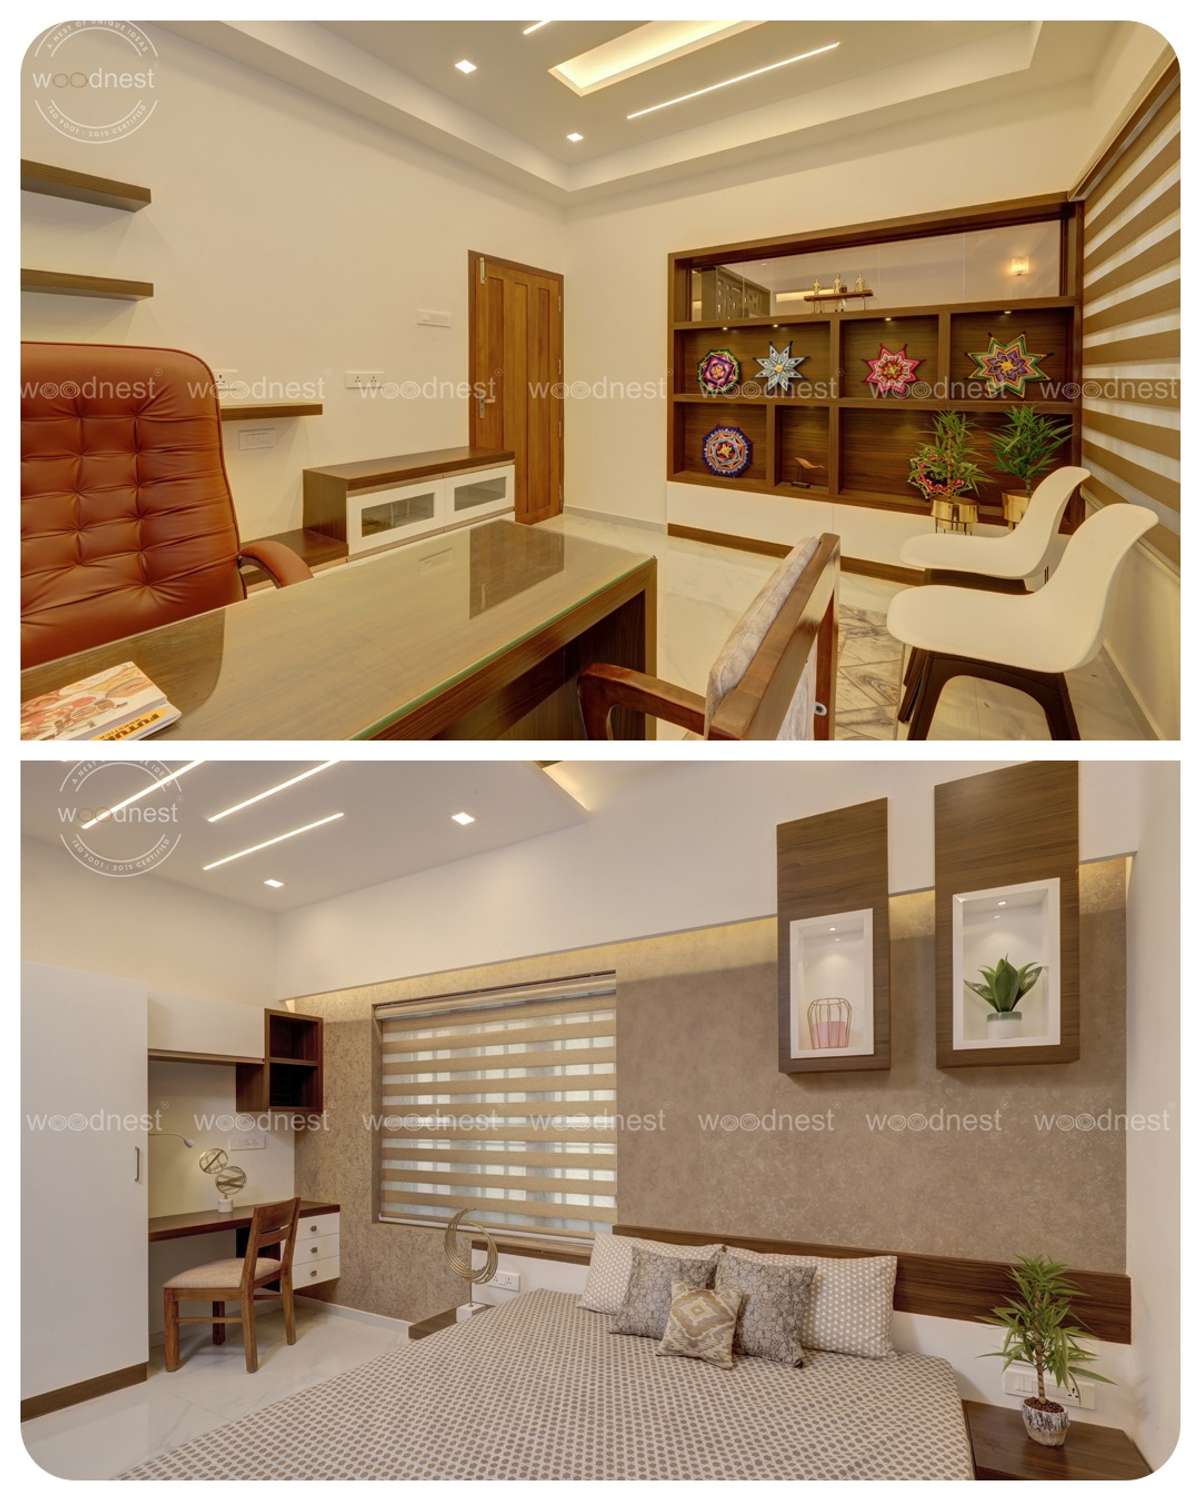 Designs by Interior Designer Woodnest Developers, Thrissur | Kolo